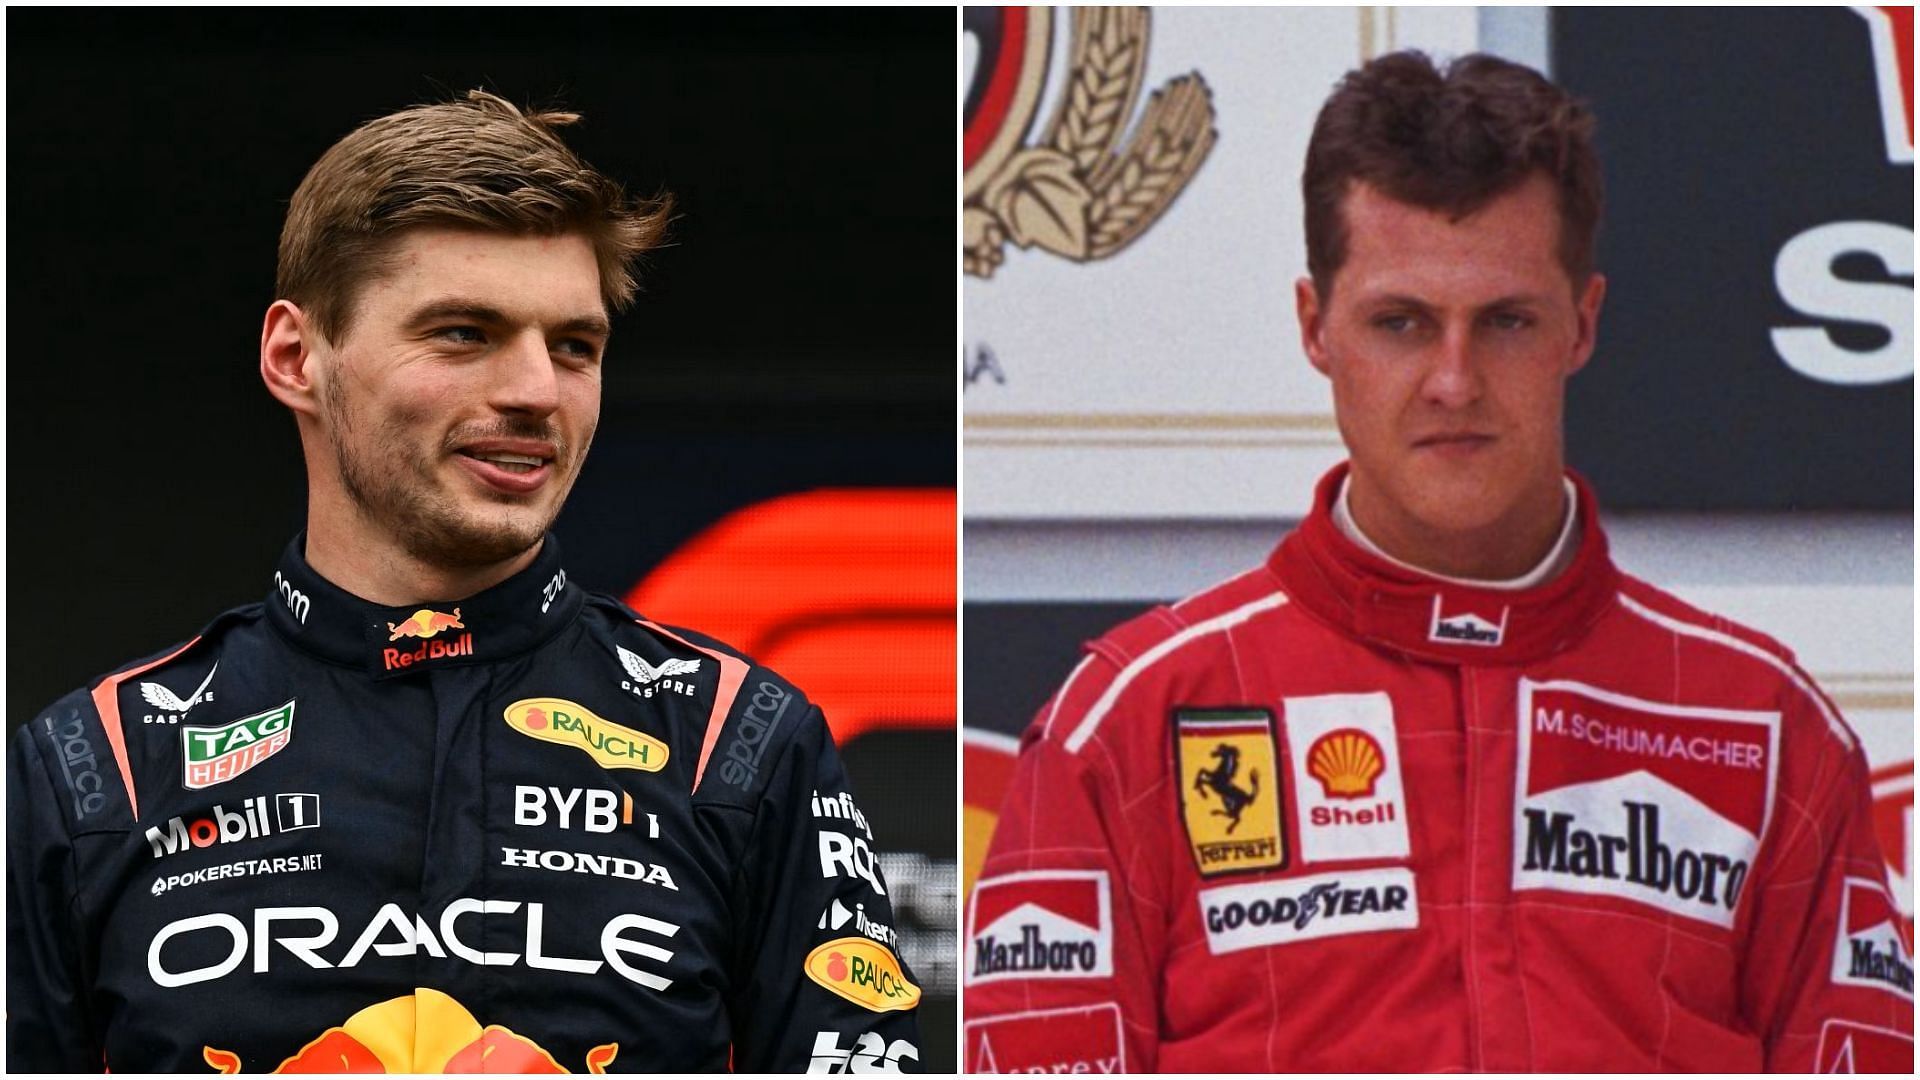 Max Verstappen (R) and Michael Schumacher (L) (Collage via Sportskeeda)